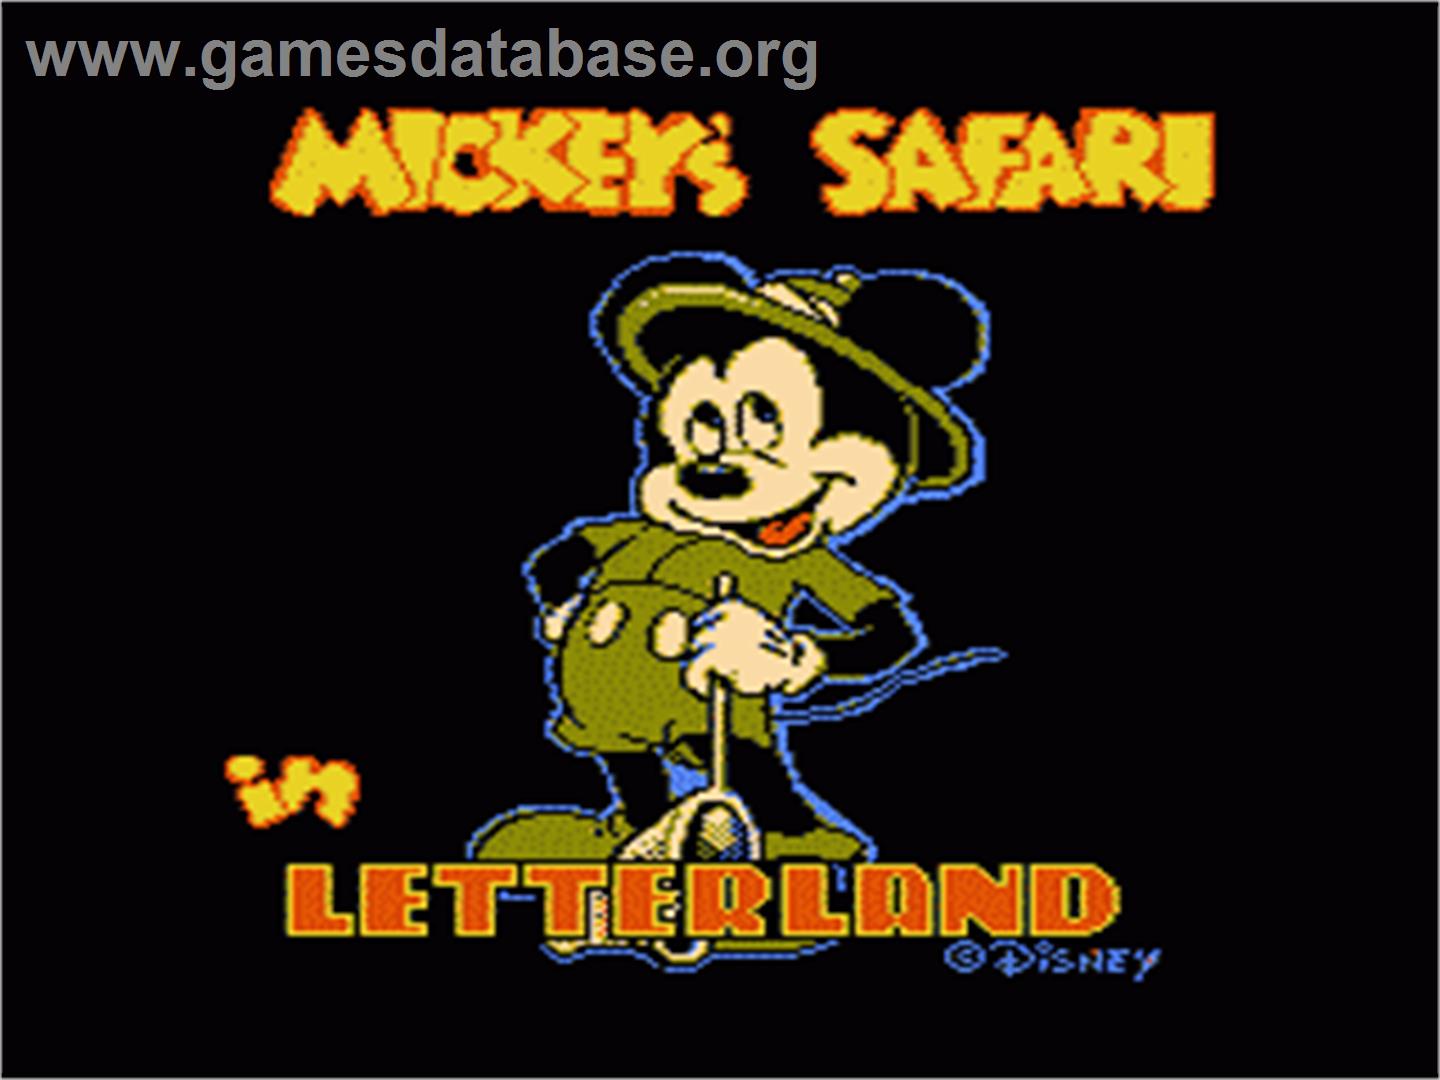 Mickey's Safari In Letterland - Nintendo NES - Artwork - Title Screen